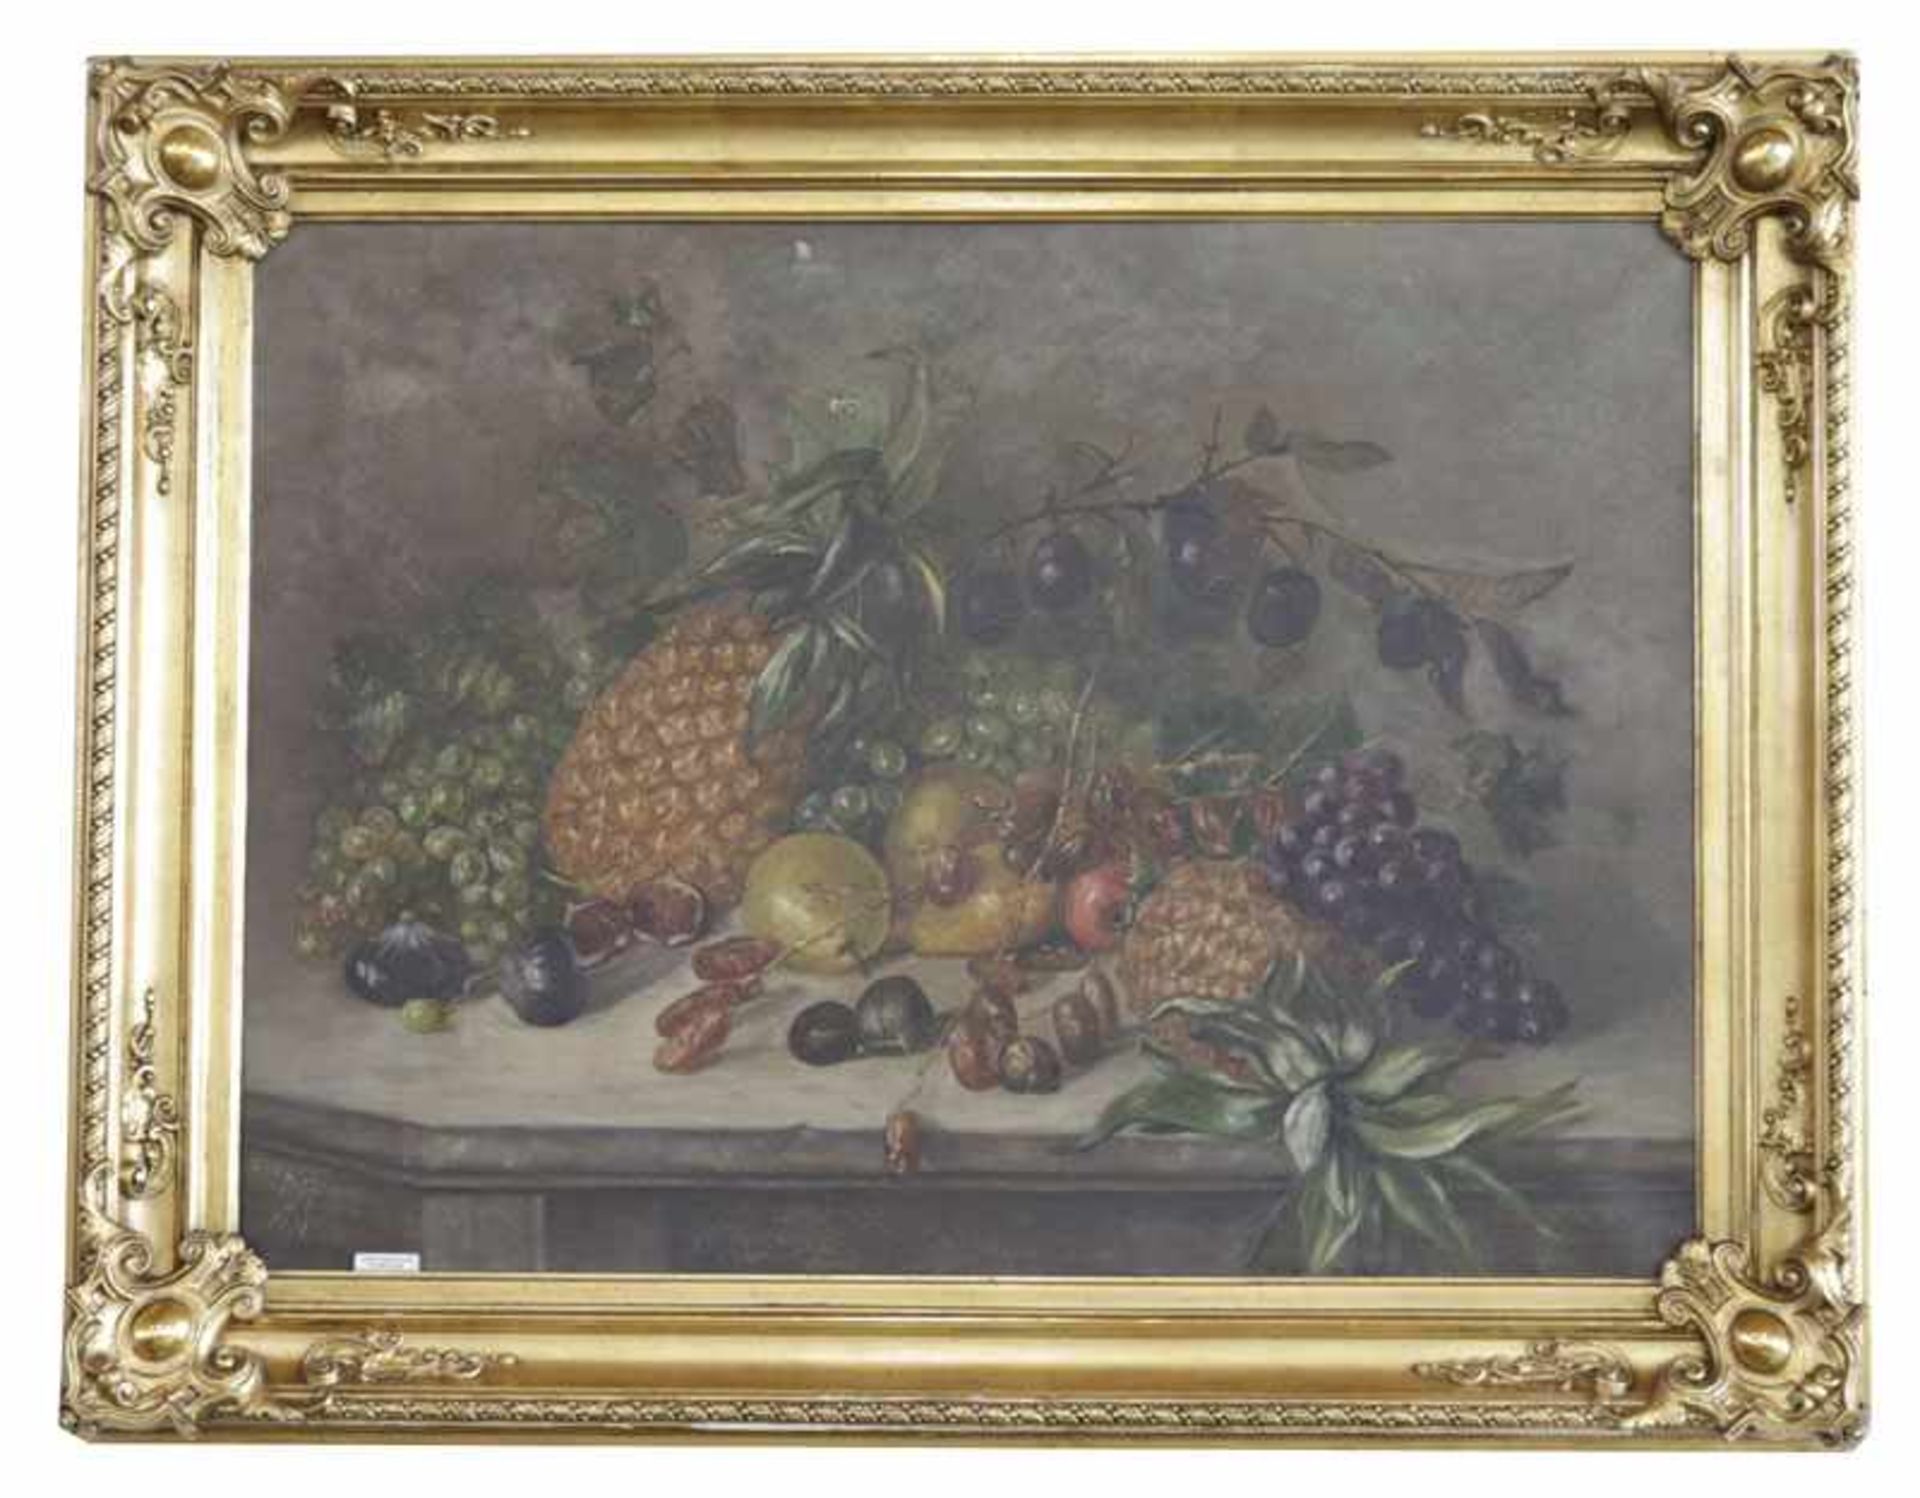 Gemälde ÖL/LW 'Früchte-Stillleben', monogrammiert MR 1901, LW beschädigt, Loch und kleine